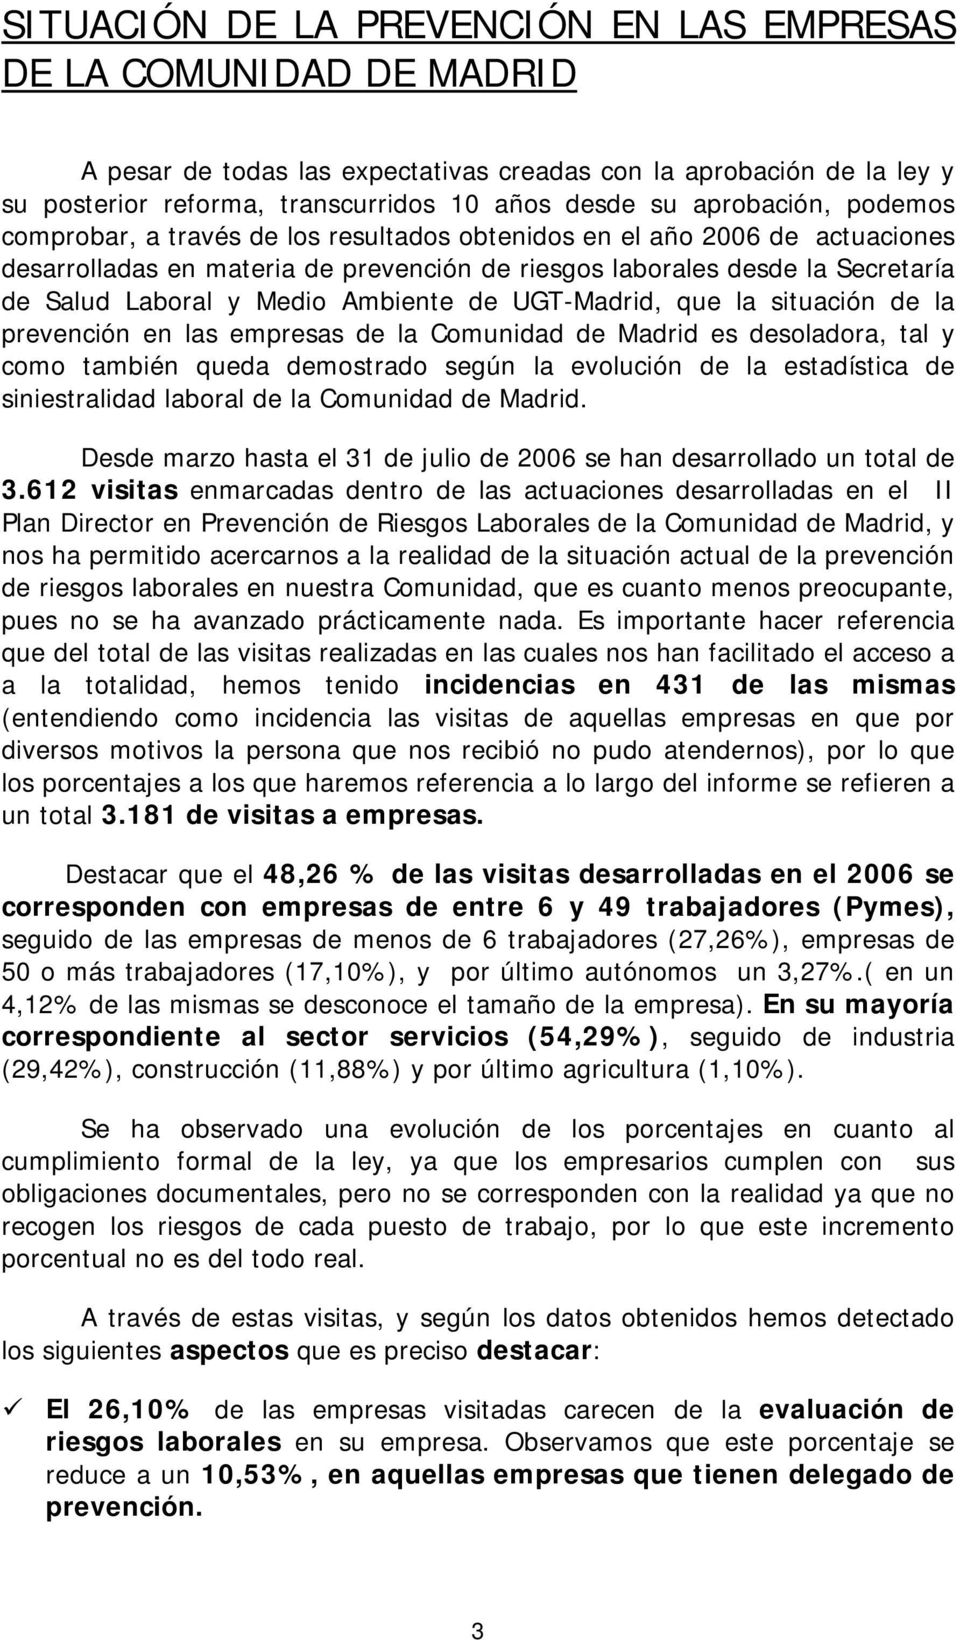 Medio Ambiente de UGT-Madrid, que la situación de la prevención en las empresas de la Comunidad de Madrid es desoladora, tal y como también queda demostrado según la evolución de la estadística de